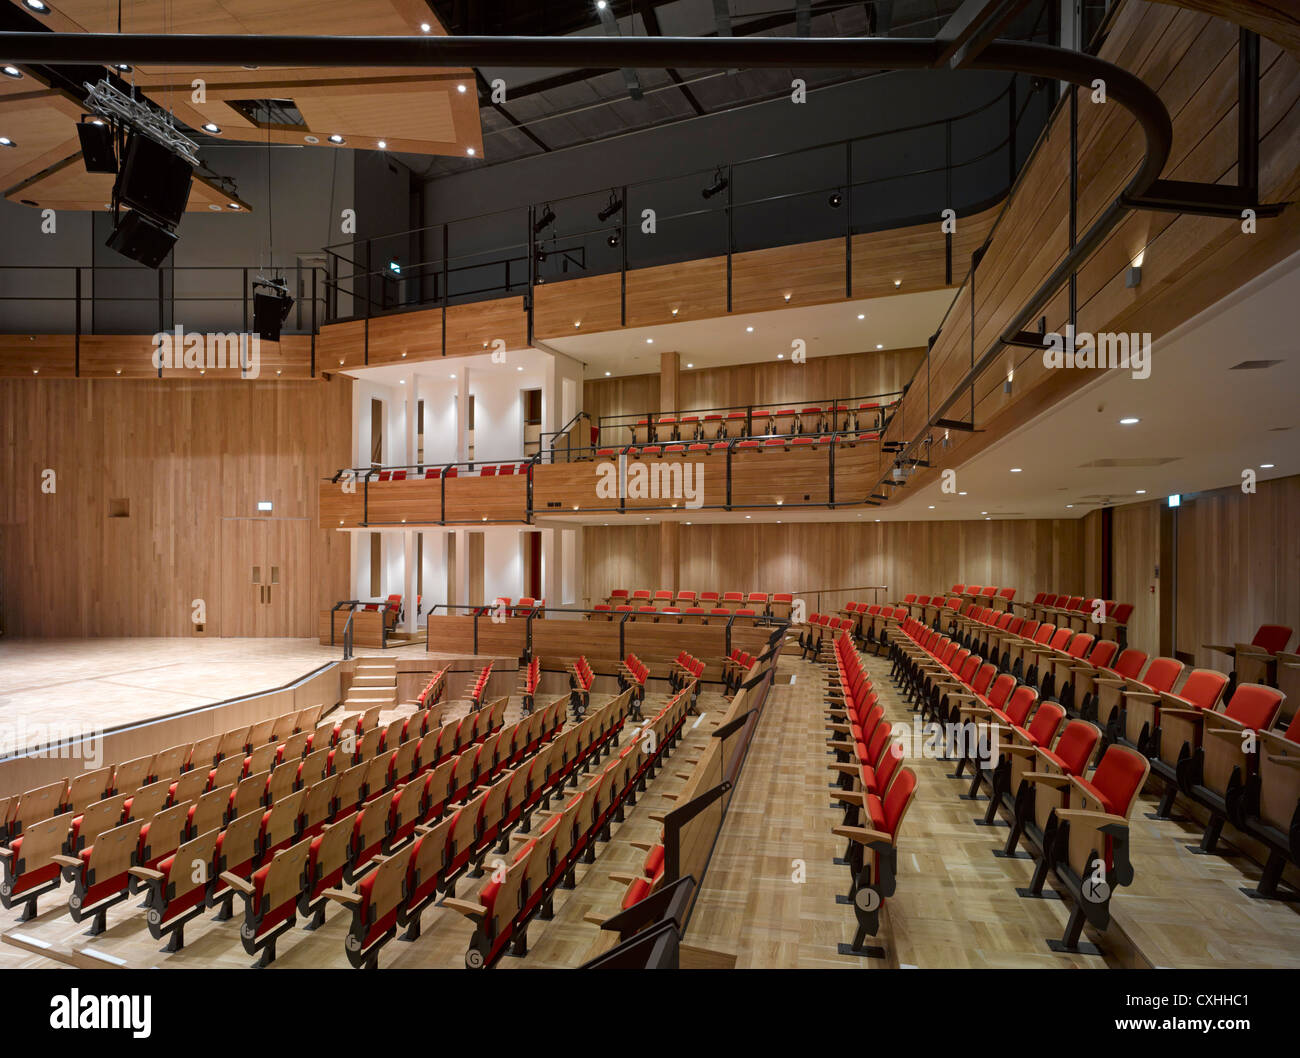 Bramall musica edificio, Università di Birmingham, Birmingham, Regno Unito. Architetto: Glenn Howells Architects, 2012. Foto Stock